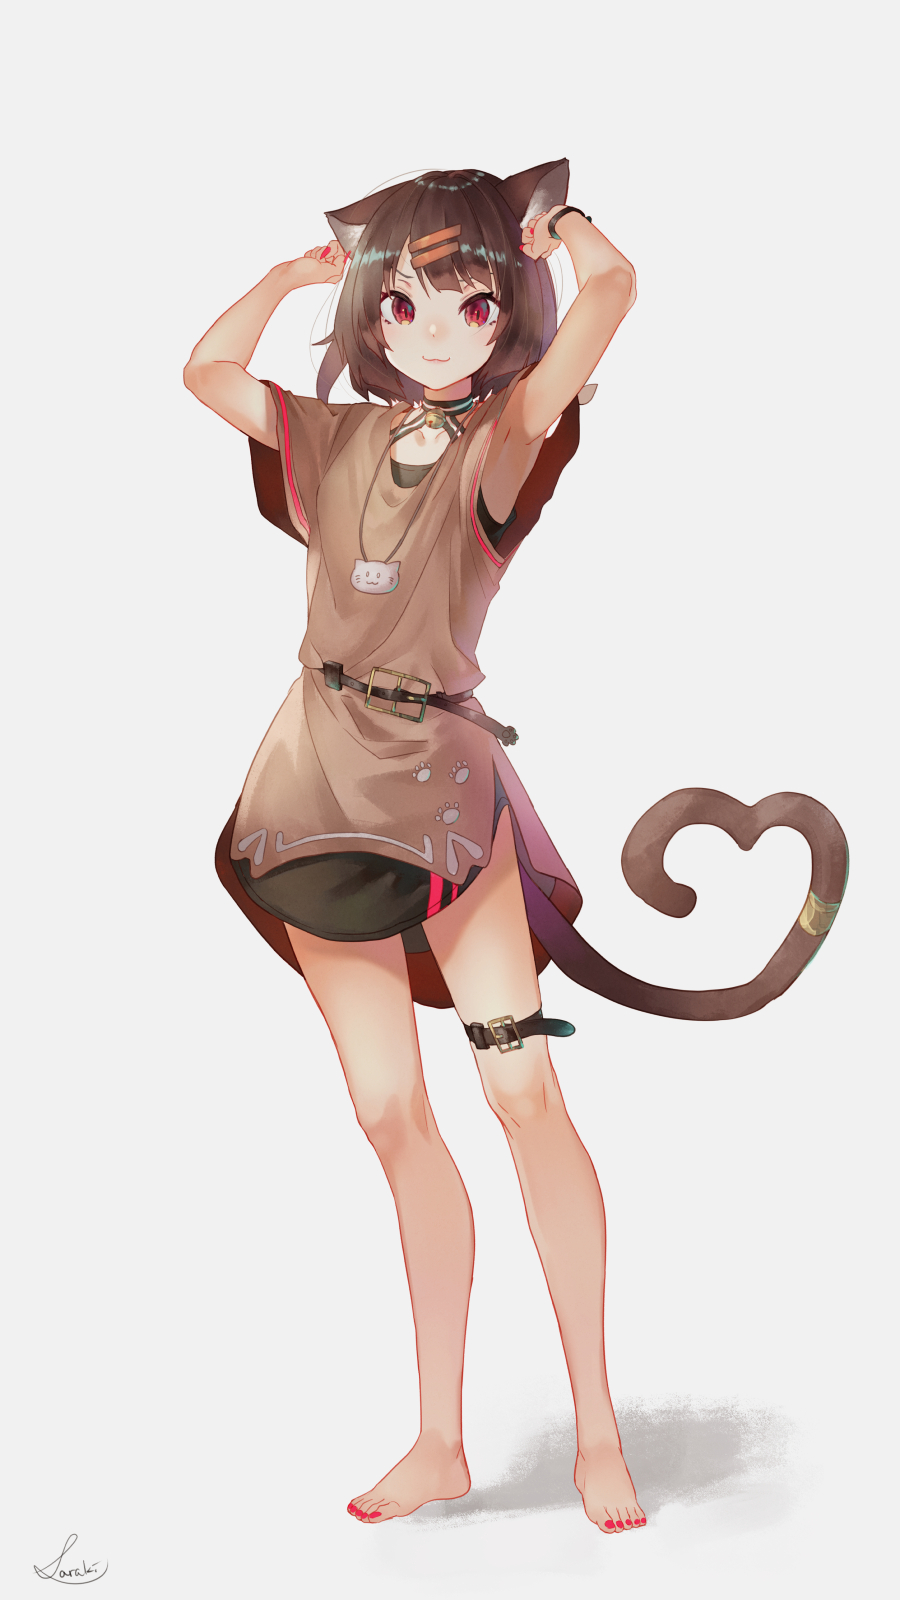 Anime 900x1600 anime anime girls digital art artwork portrait display 2D Saraki cat girl brunette red eyes dress barefoot